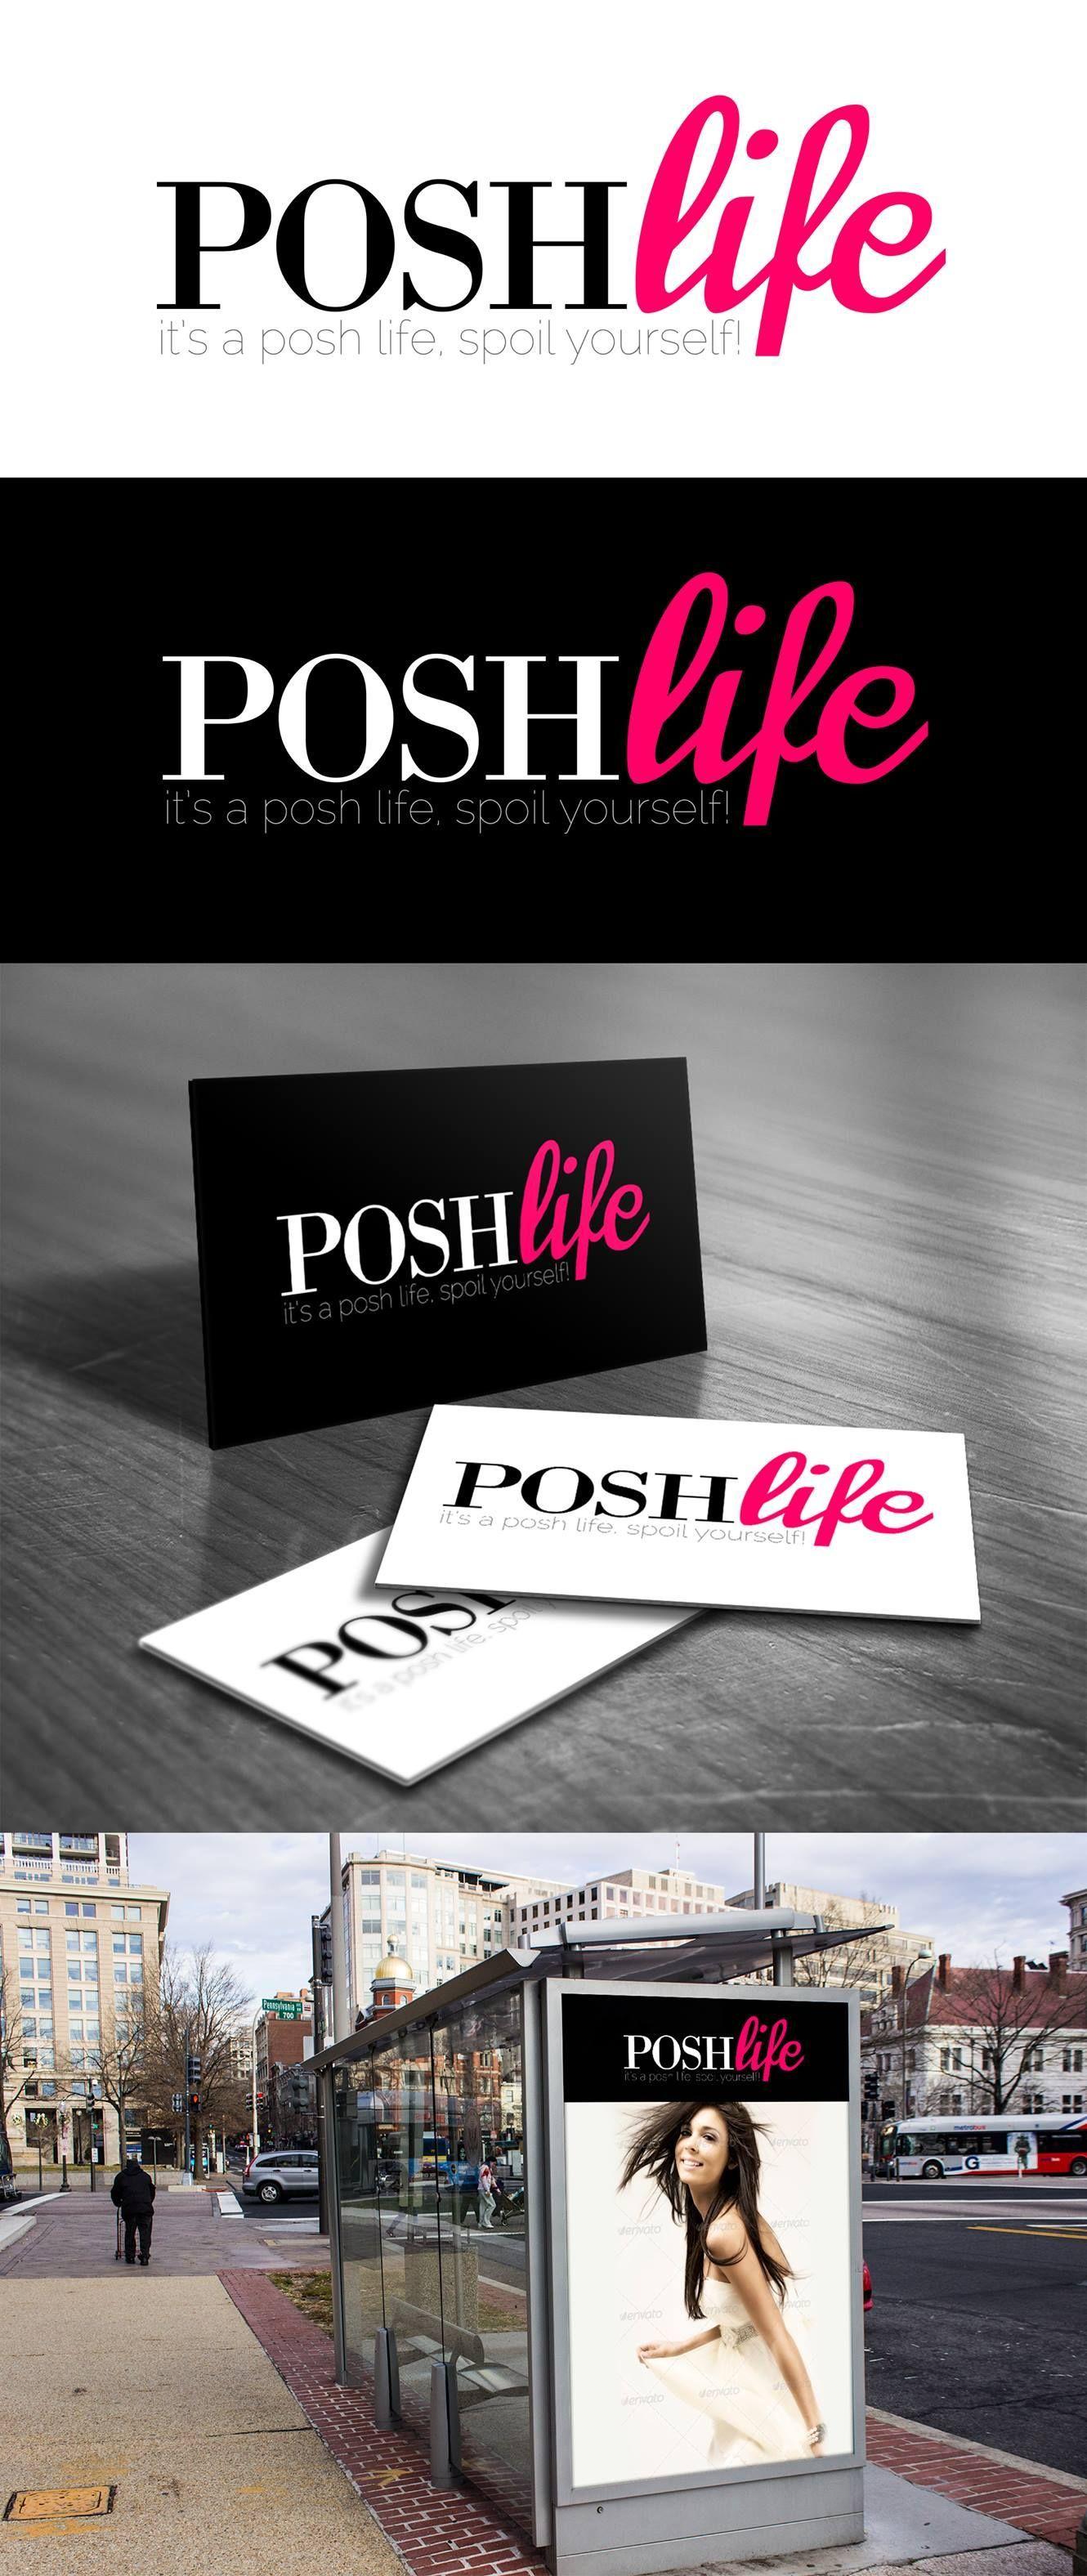 Posh Life Logo - Posh Life Logo Design. 99designs Contest Entry. Designed